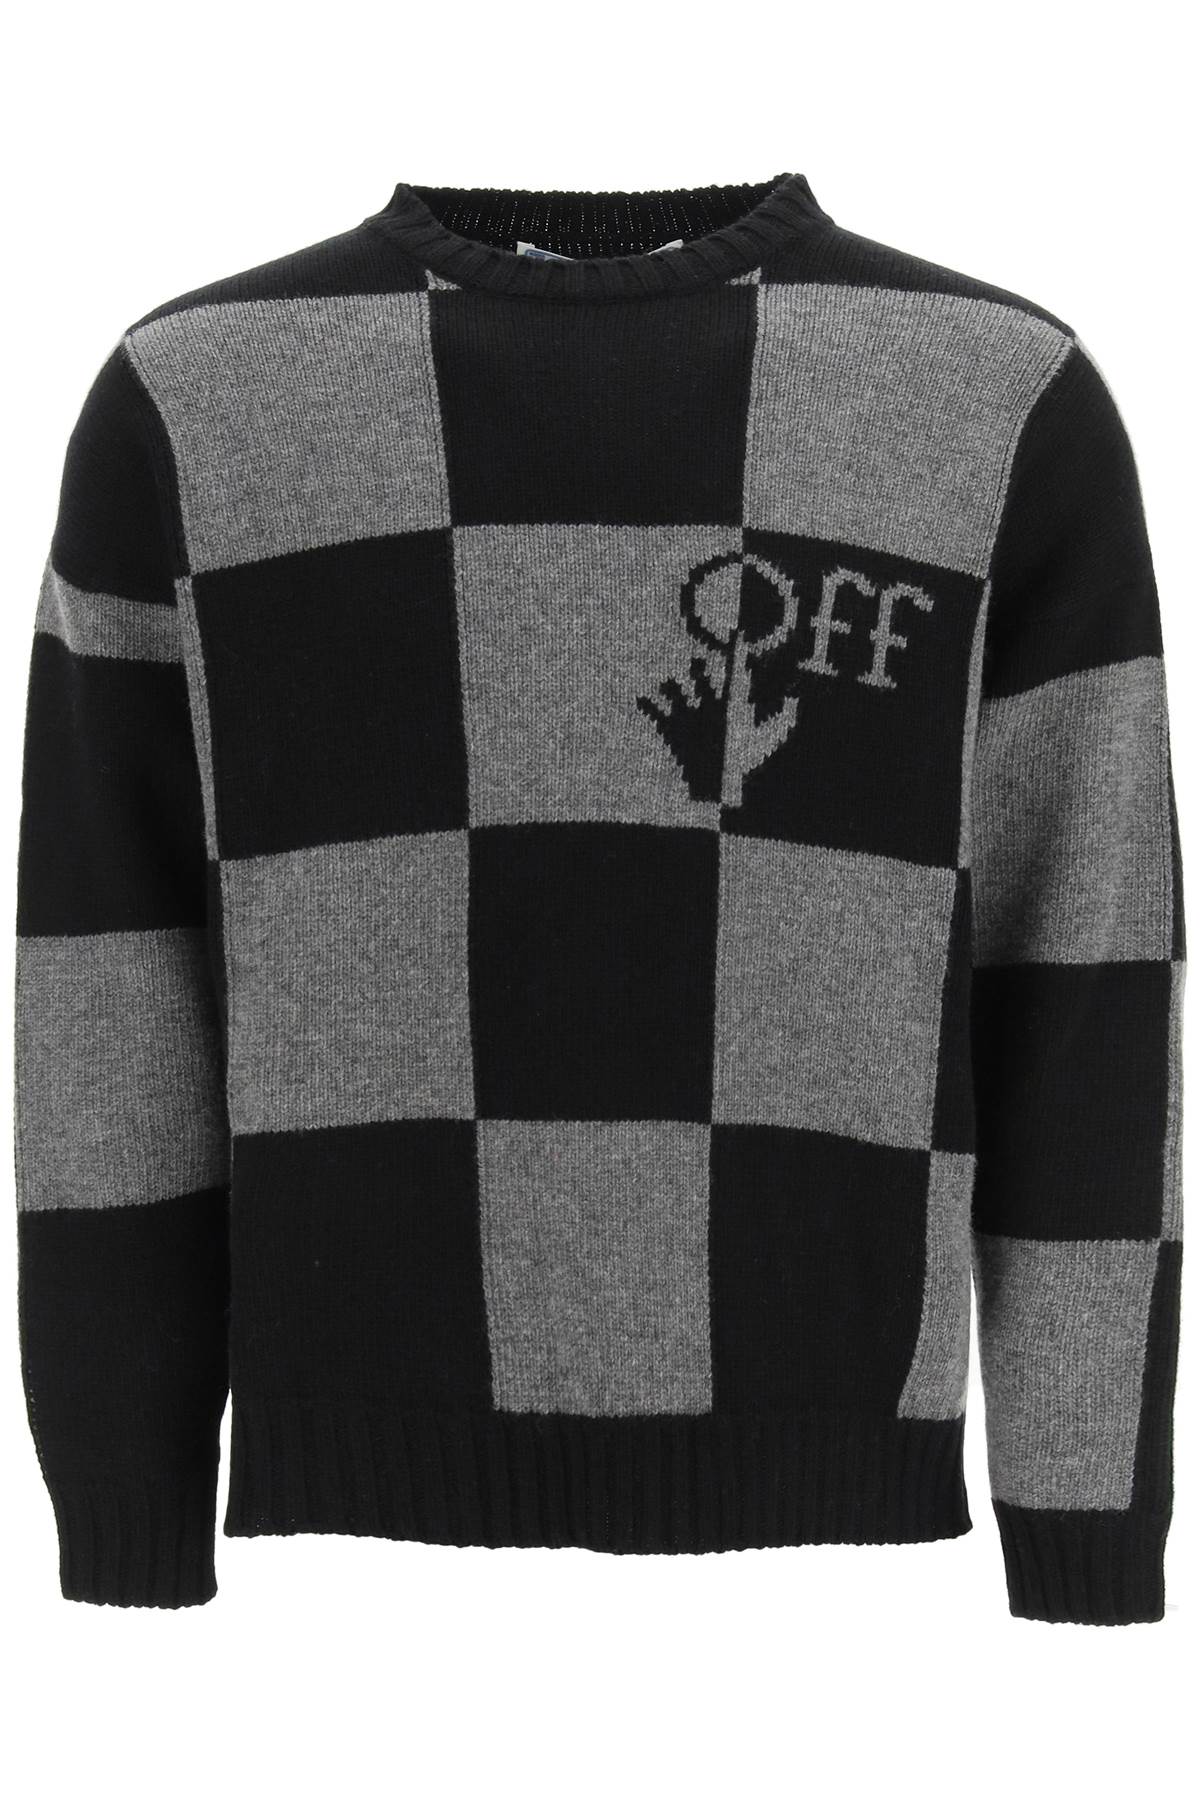 Off-White Checkerboard Sweater